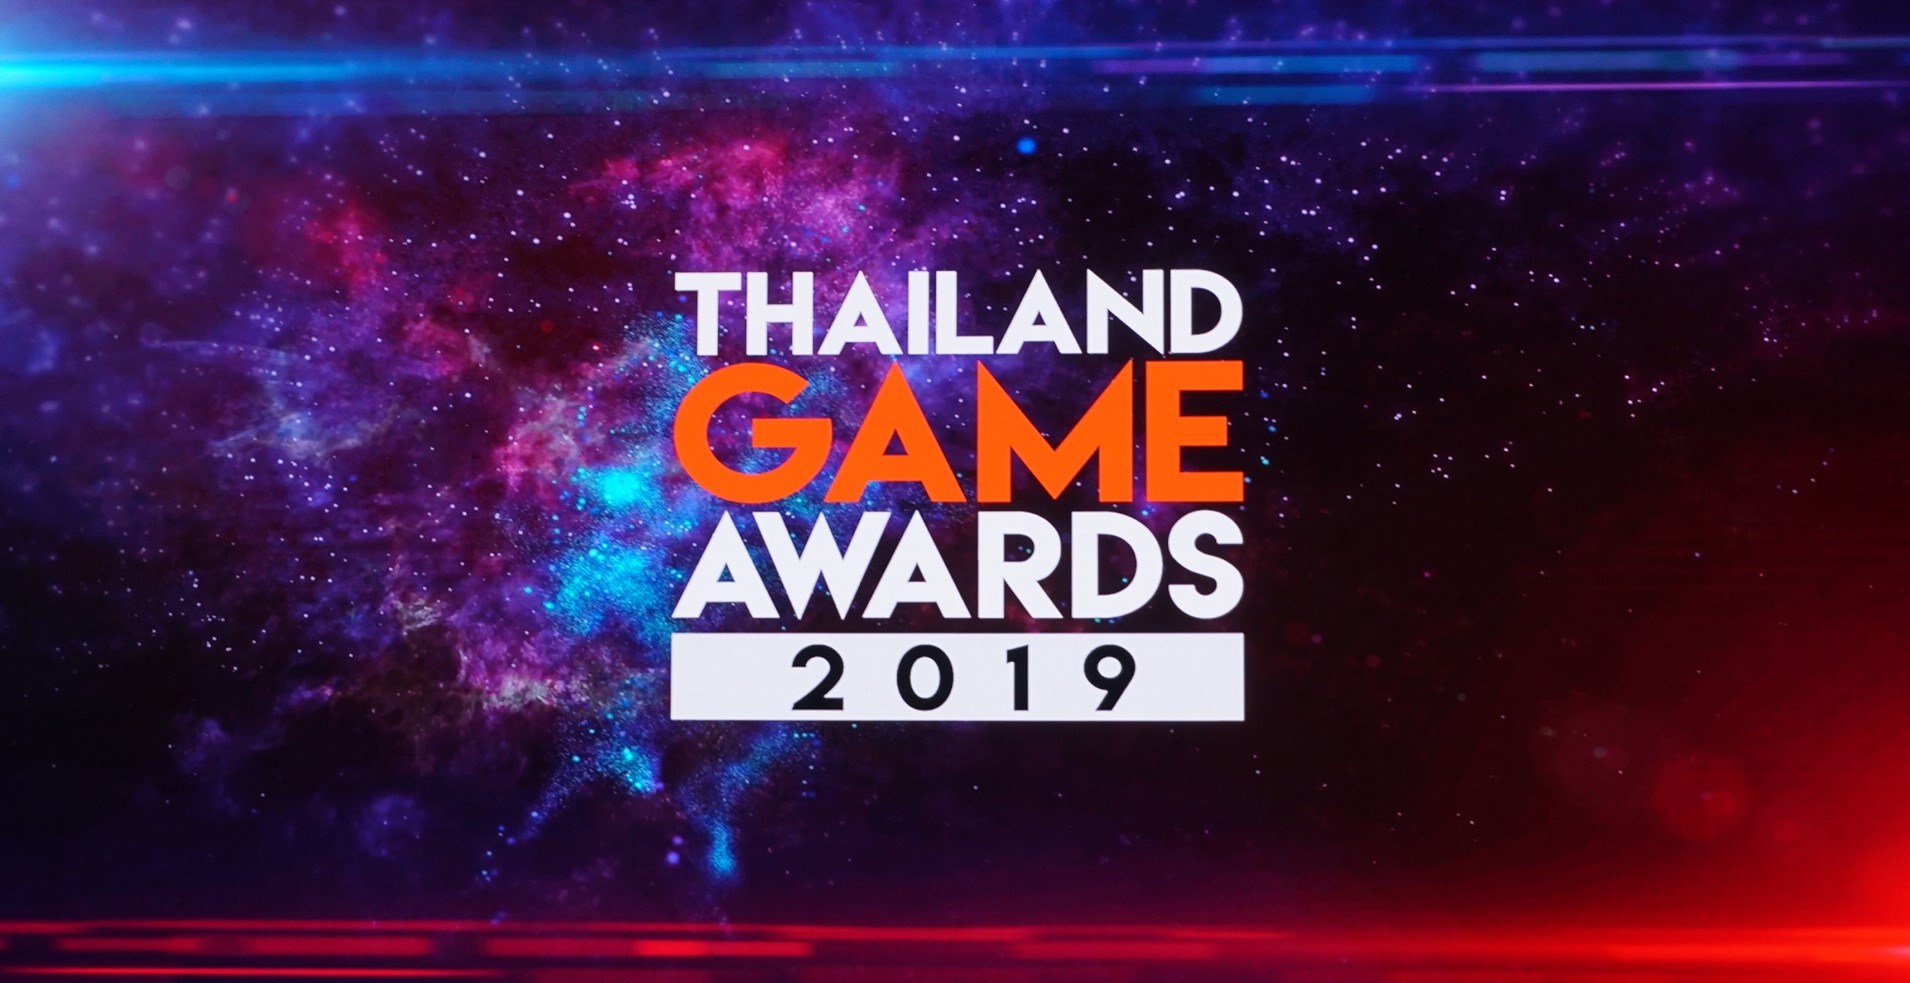 ประกาศผลรางวัล Thailand Game Award 2019 สุดยอดเกมแห่งปีภายในงาน TGS 2019